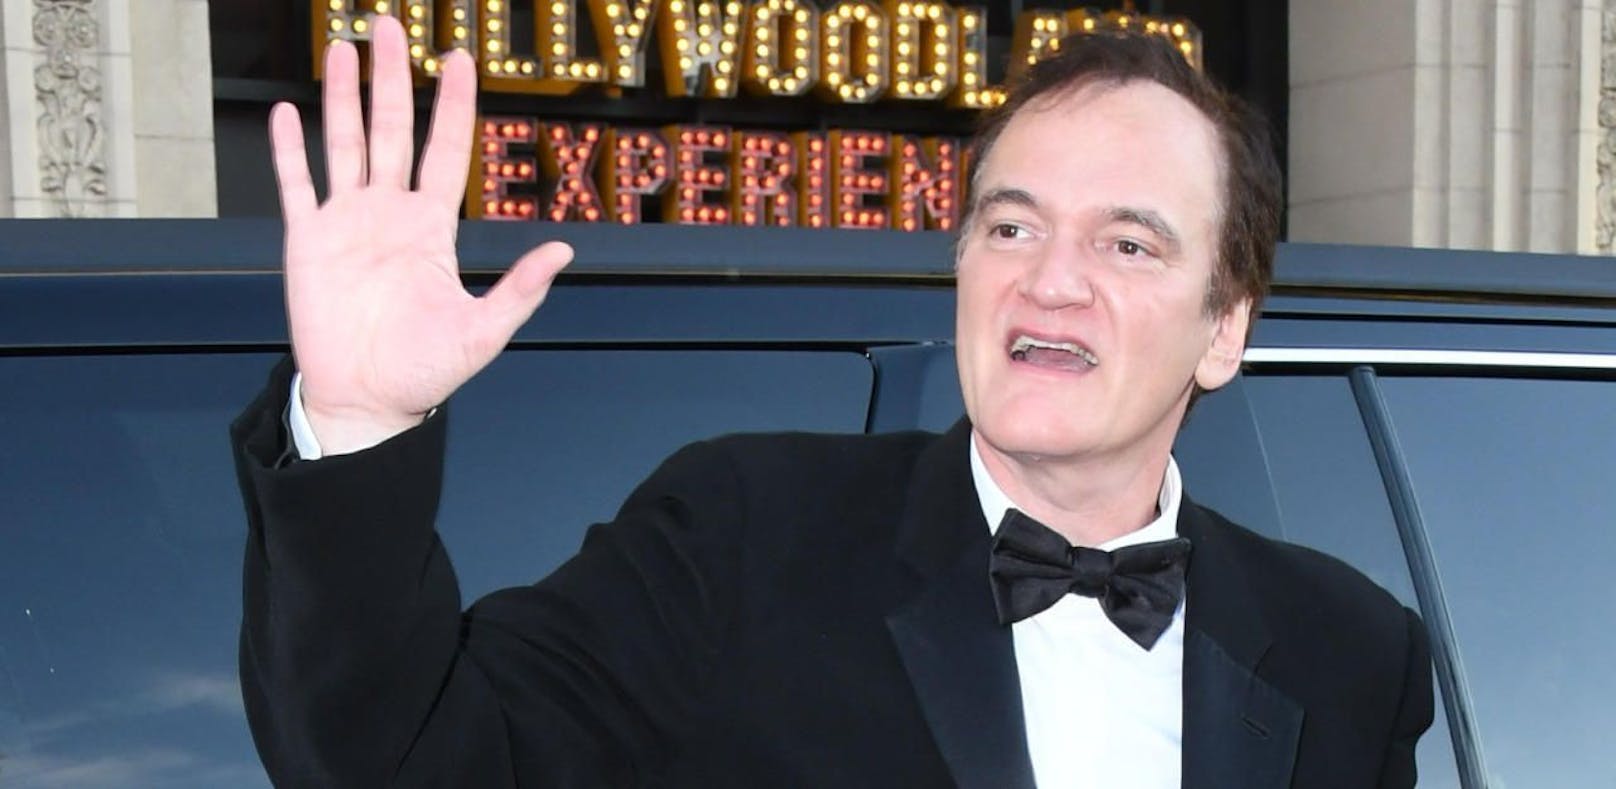 Tarantino verrät, ob er nach dem 10. Film aufhört